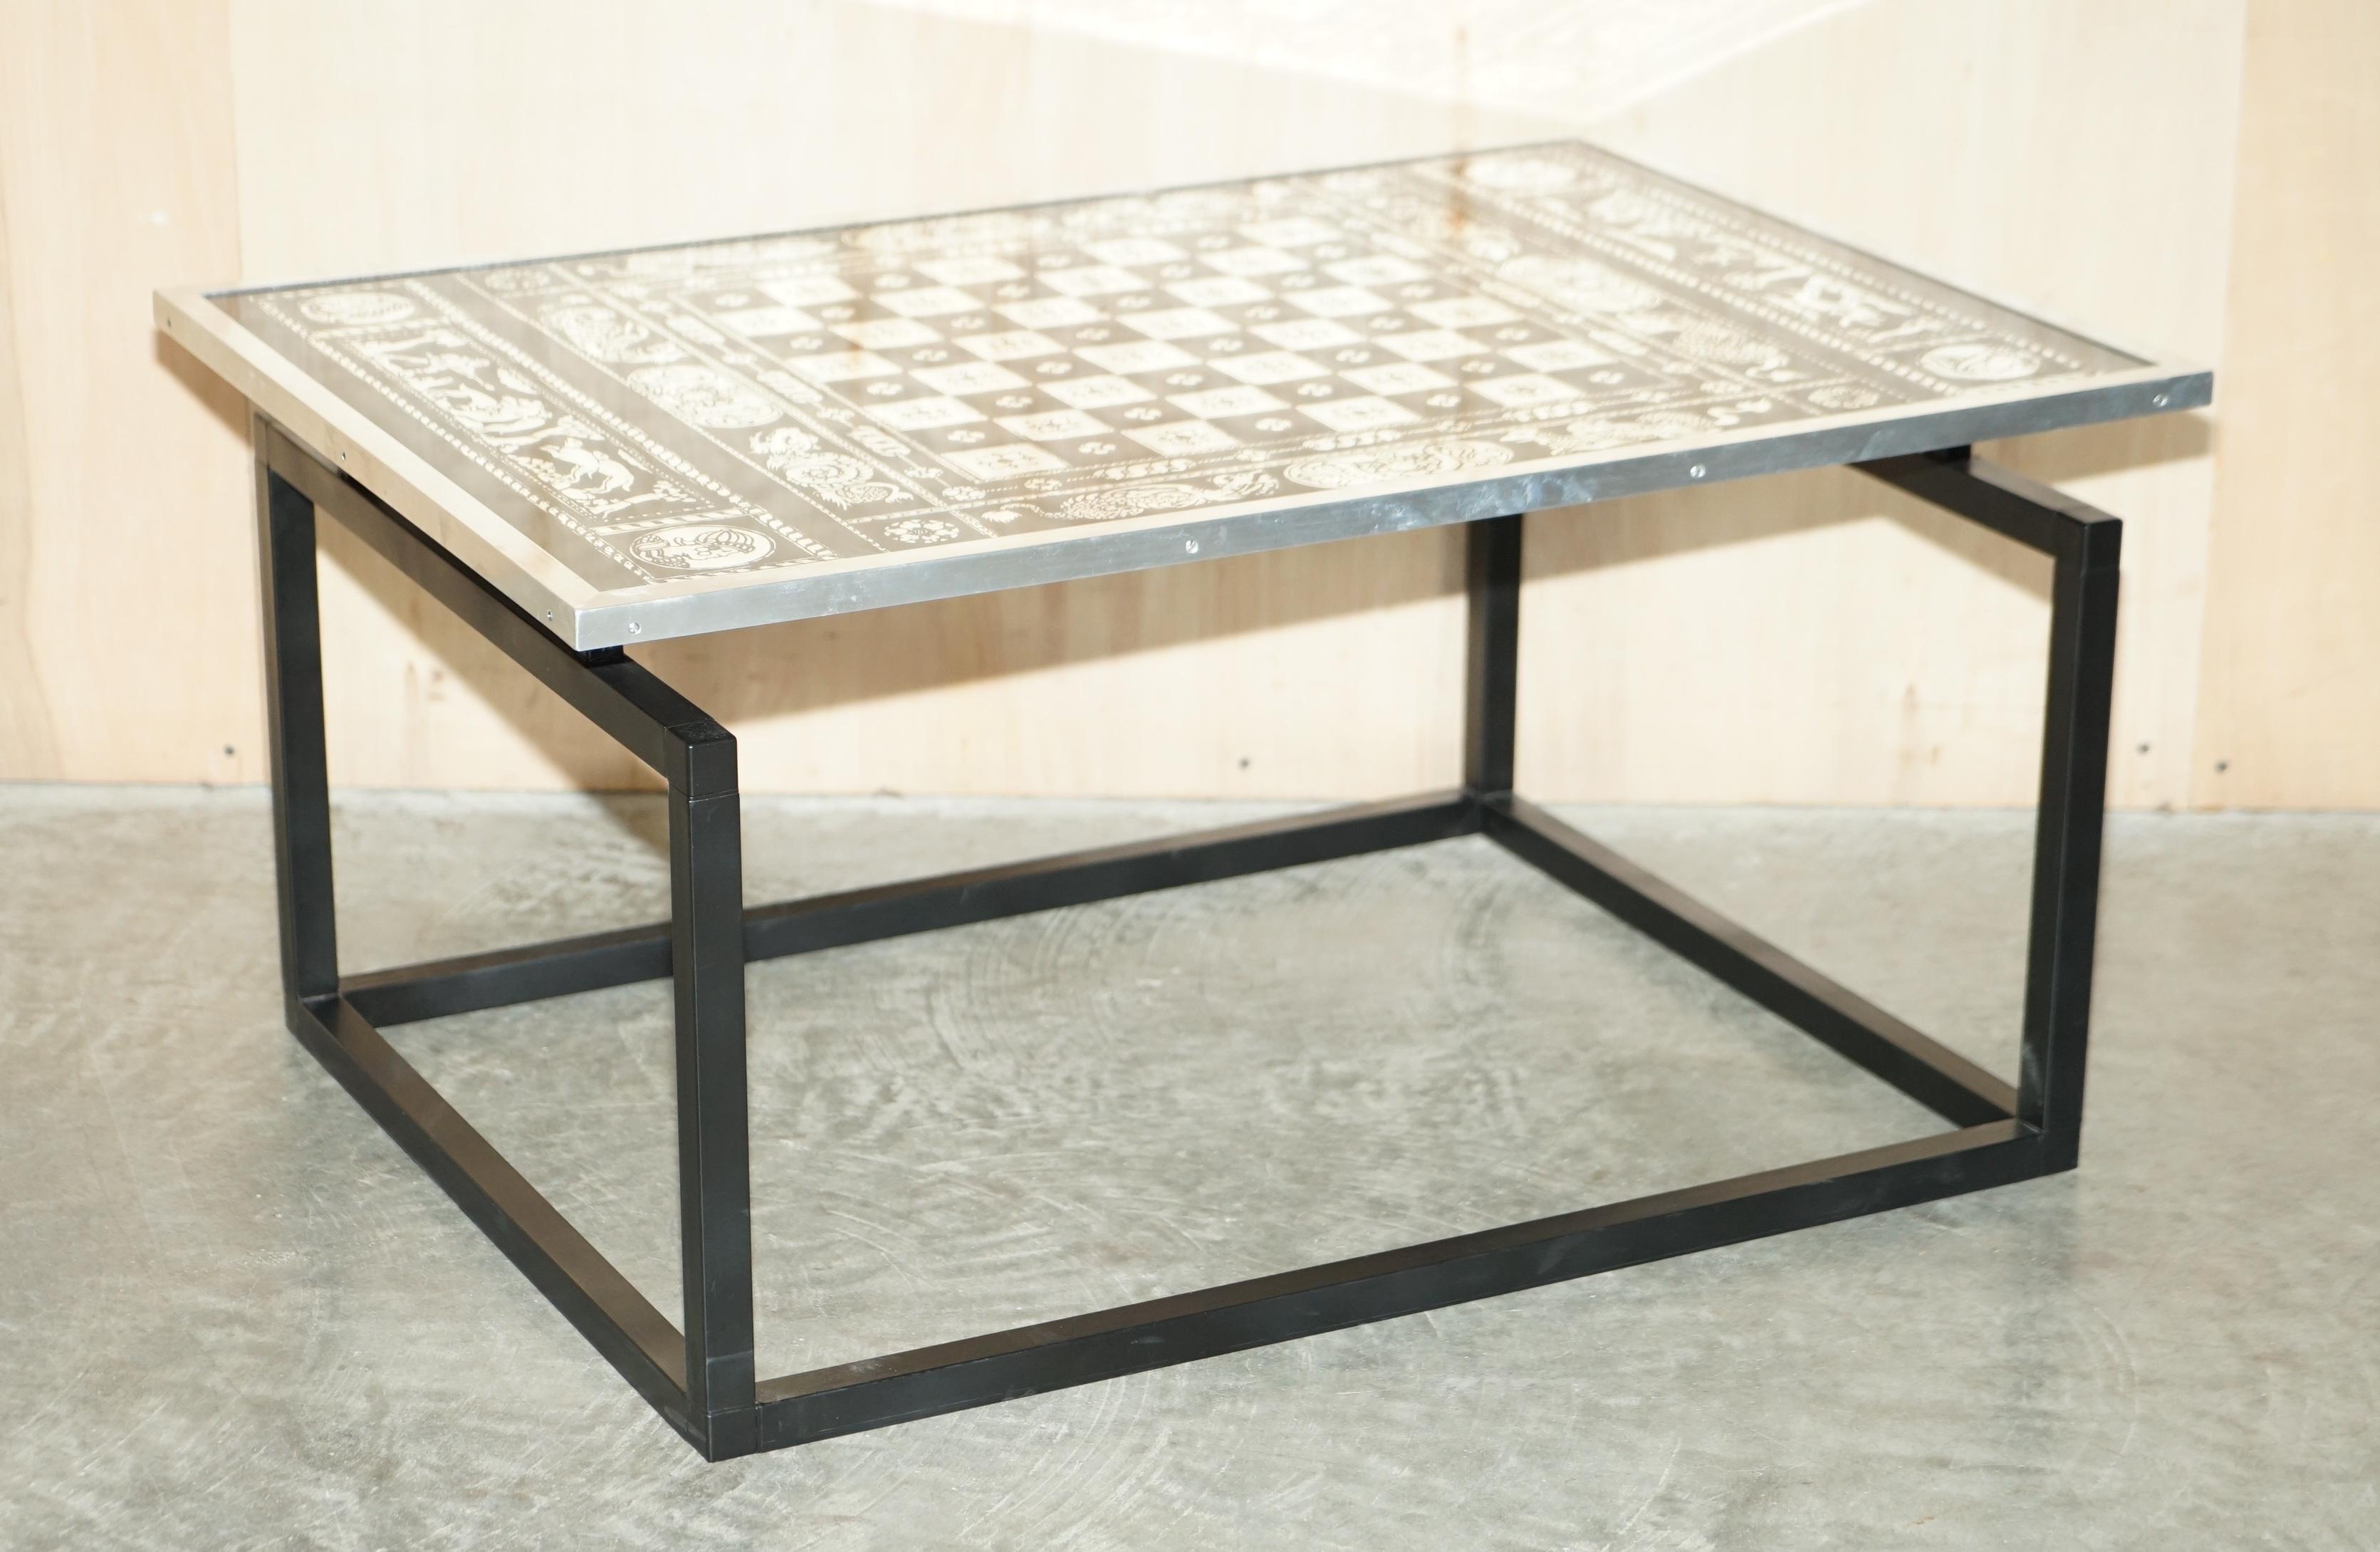 Wir freuen uns, diesen exquisiten Vintage-Schachbrett-Tisch zum Verkauf anbieten zu können

Ein sehr gut gemacht und dekoratives Stück, das Brett ist größer als normal mit einem Chromrahmen 

Zustandstechnisch haben wir es von oben bis unten